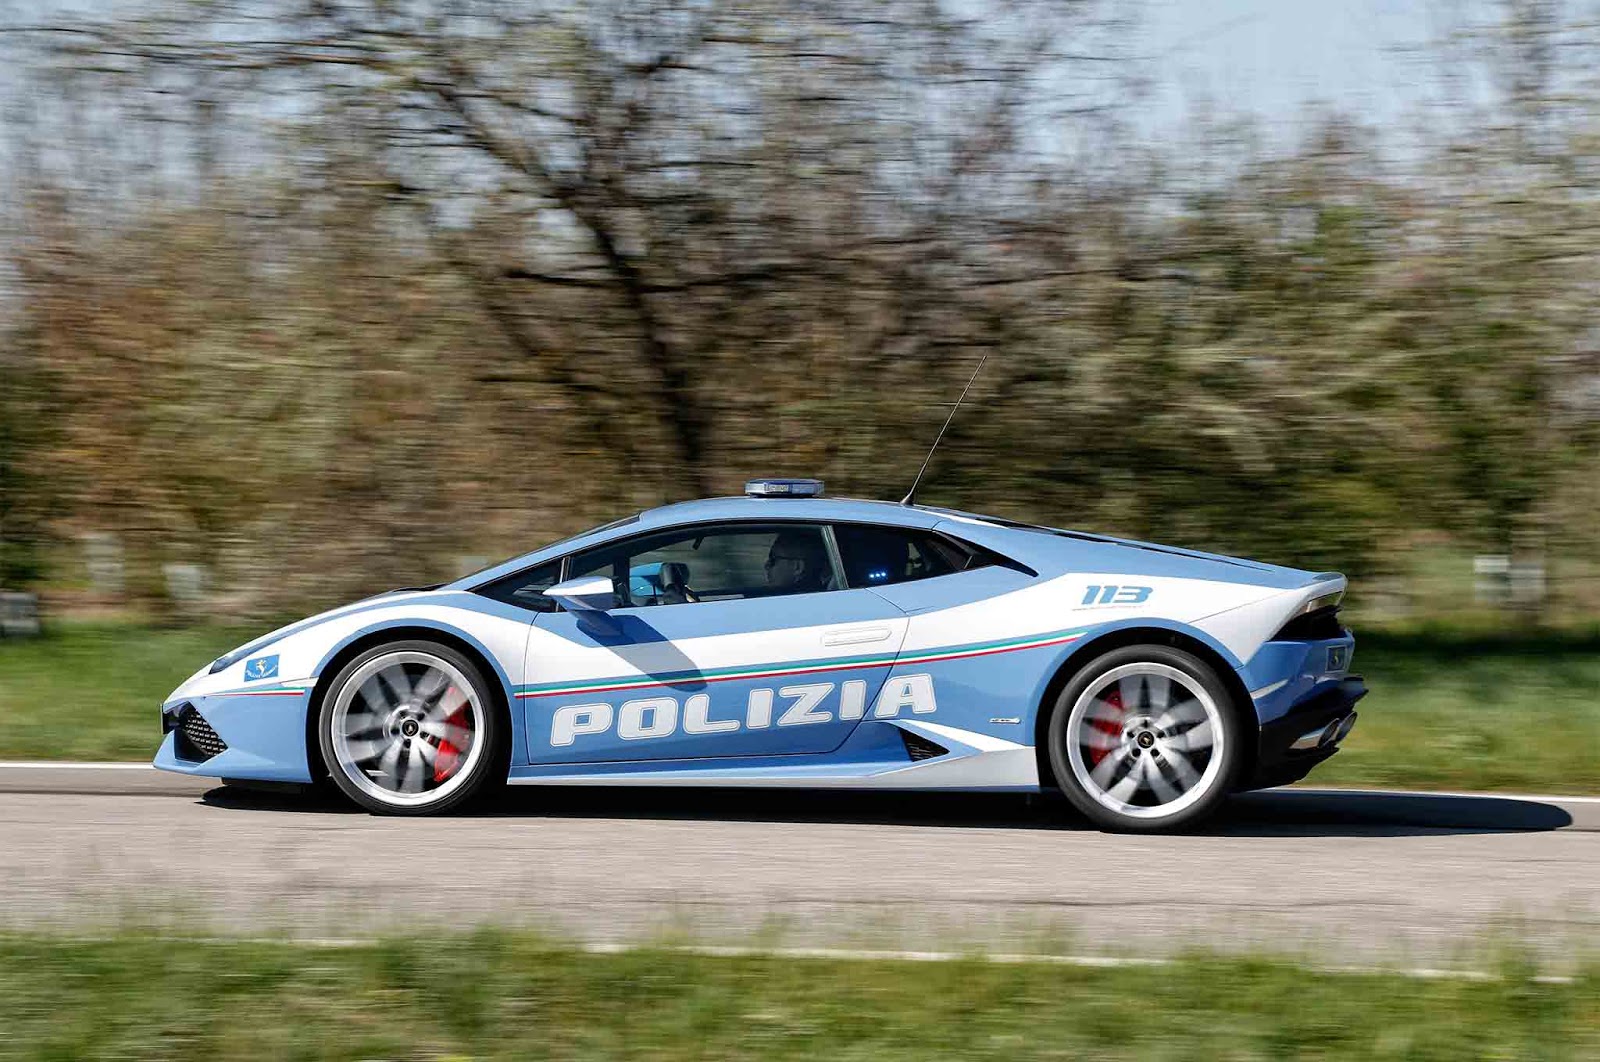 Cảnh sát Ý dùng Lamborghini Huracan vận chuyển thận với tốc độ trung bình 230 km/h lamborghini-huracan-italian-police-kidney-run-1.jpg